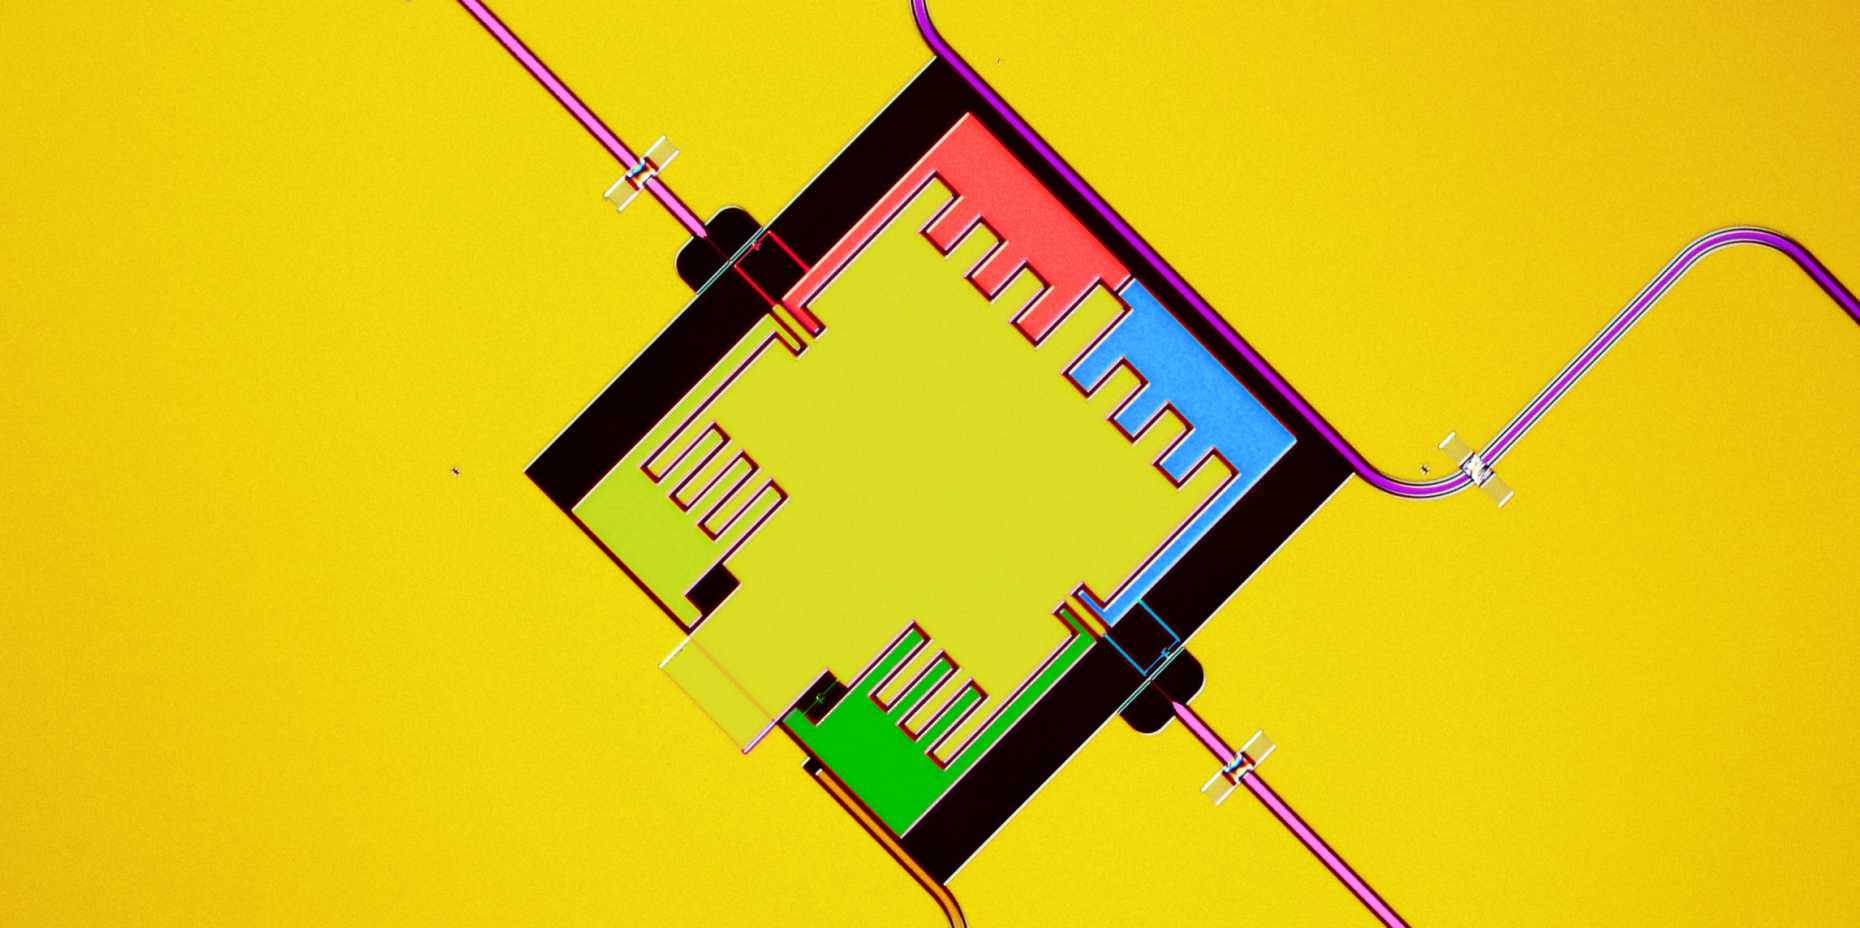 Vergr?sserte Ansicht: Bild einer Schaltung mit drei Qubits, mit der die Umwandlung von Licht simuliert werden kann. Die drei Qubits (in rot, blau und grün) sammeln die Mikrowellenstrahlung aus dem violetten Hohlleiter. Dank dem Rauschsignal, das über die rosa Zuflusslinien eingebracht wird, wird die Energie zum Ausgangsresonator transportiert. (Bild: ETH Zurich, Quantum Device Lab, A. Potočnik)